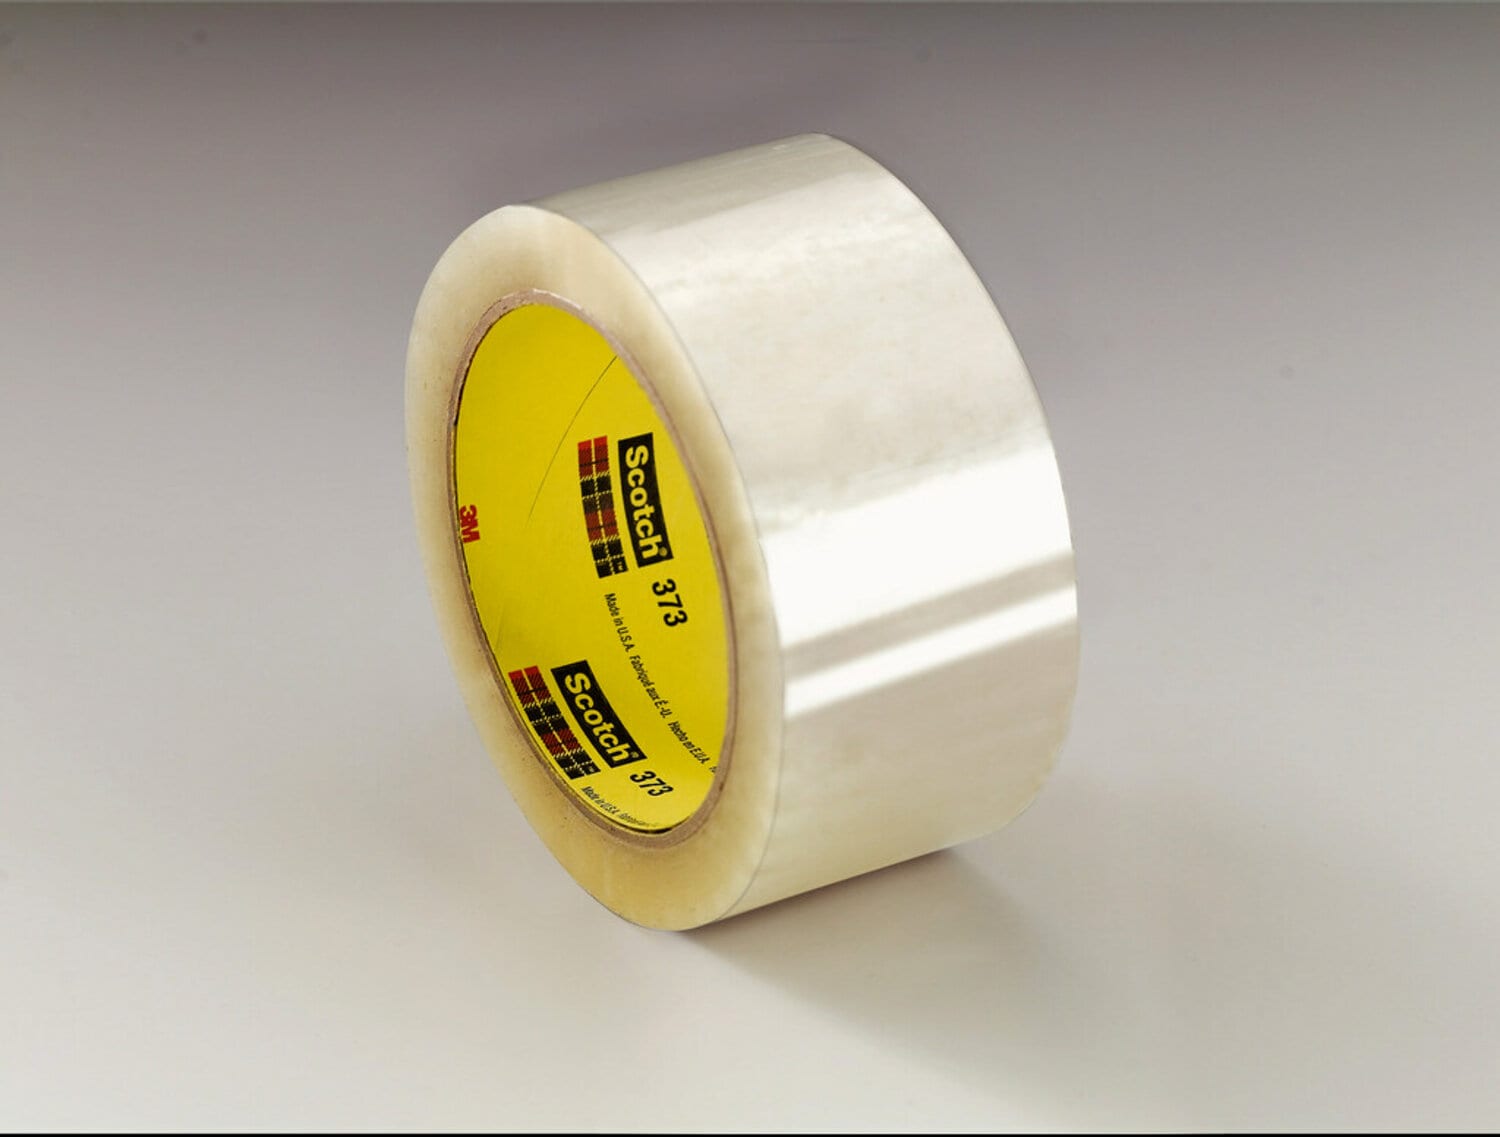 7100179498 - Scotch Custom Printed Box Sealing Tape 373CP, Clear, 48 mm x 50 m,
36/Case